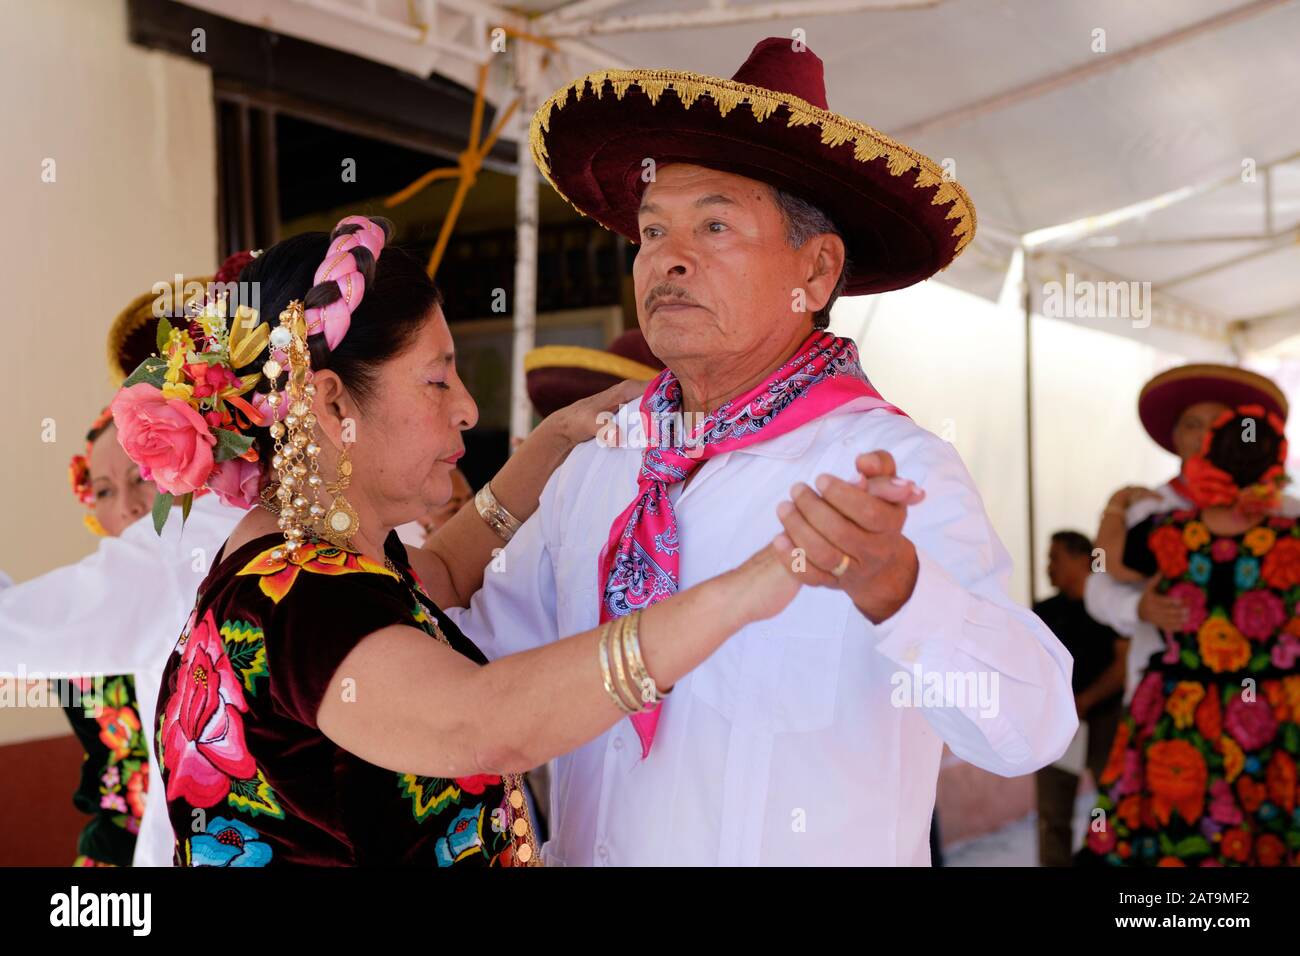 Portrait d'un couple senior de danseurs mexicains traditionnels, se produisant lors d'un événement à Oaxaca Banque D'Images